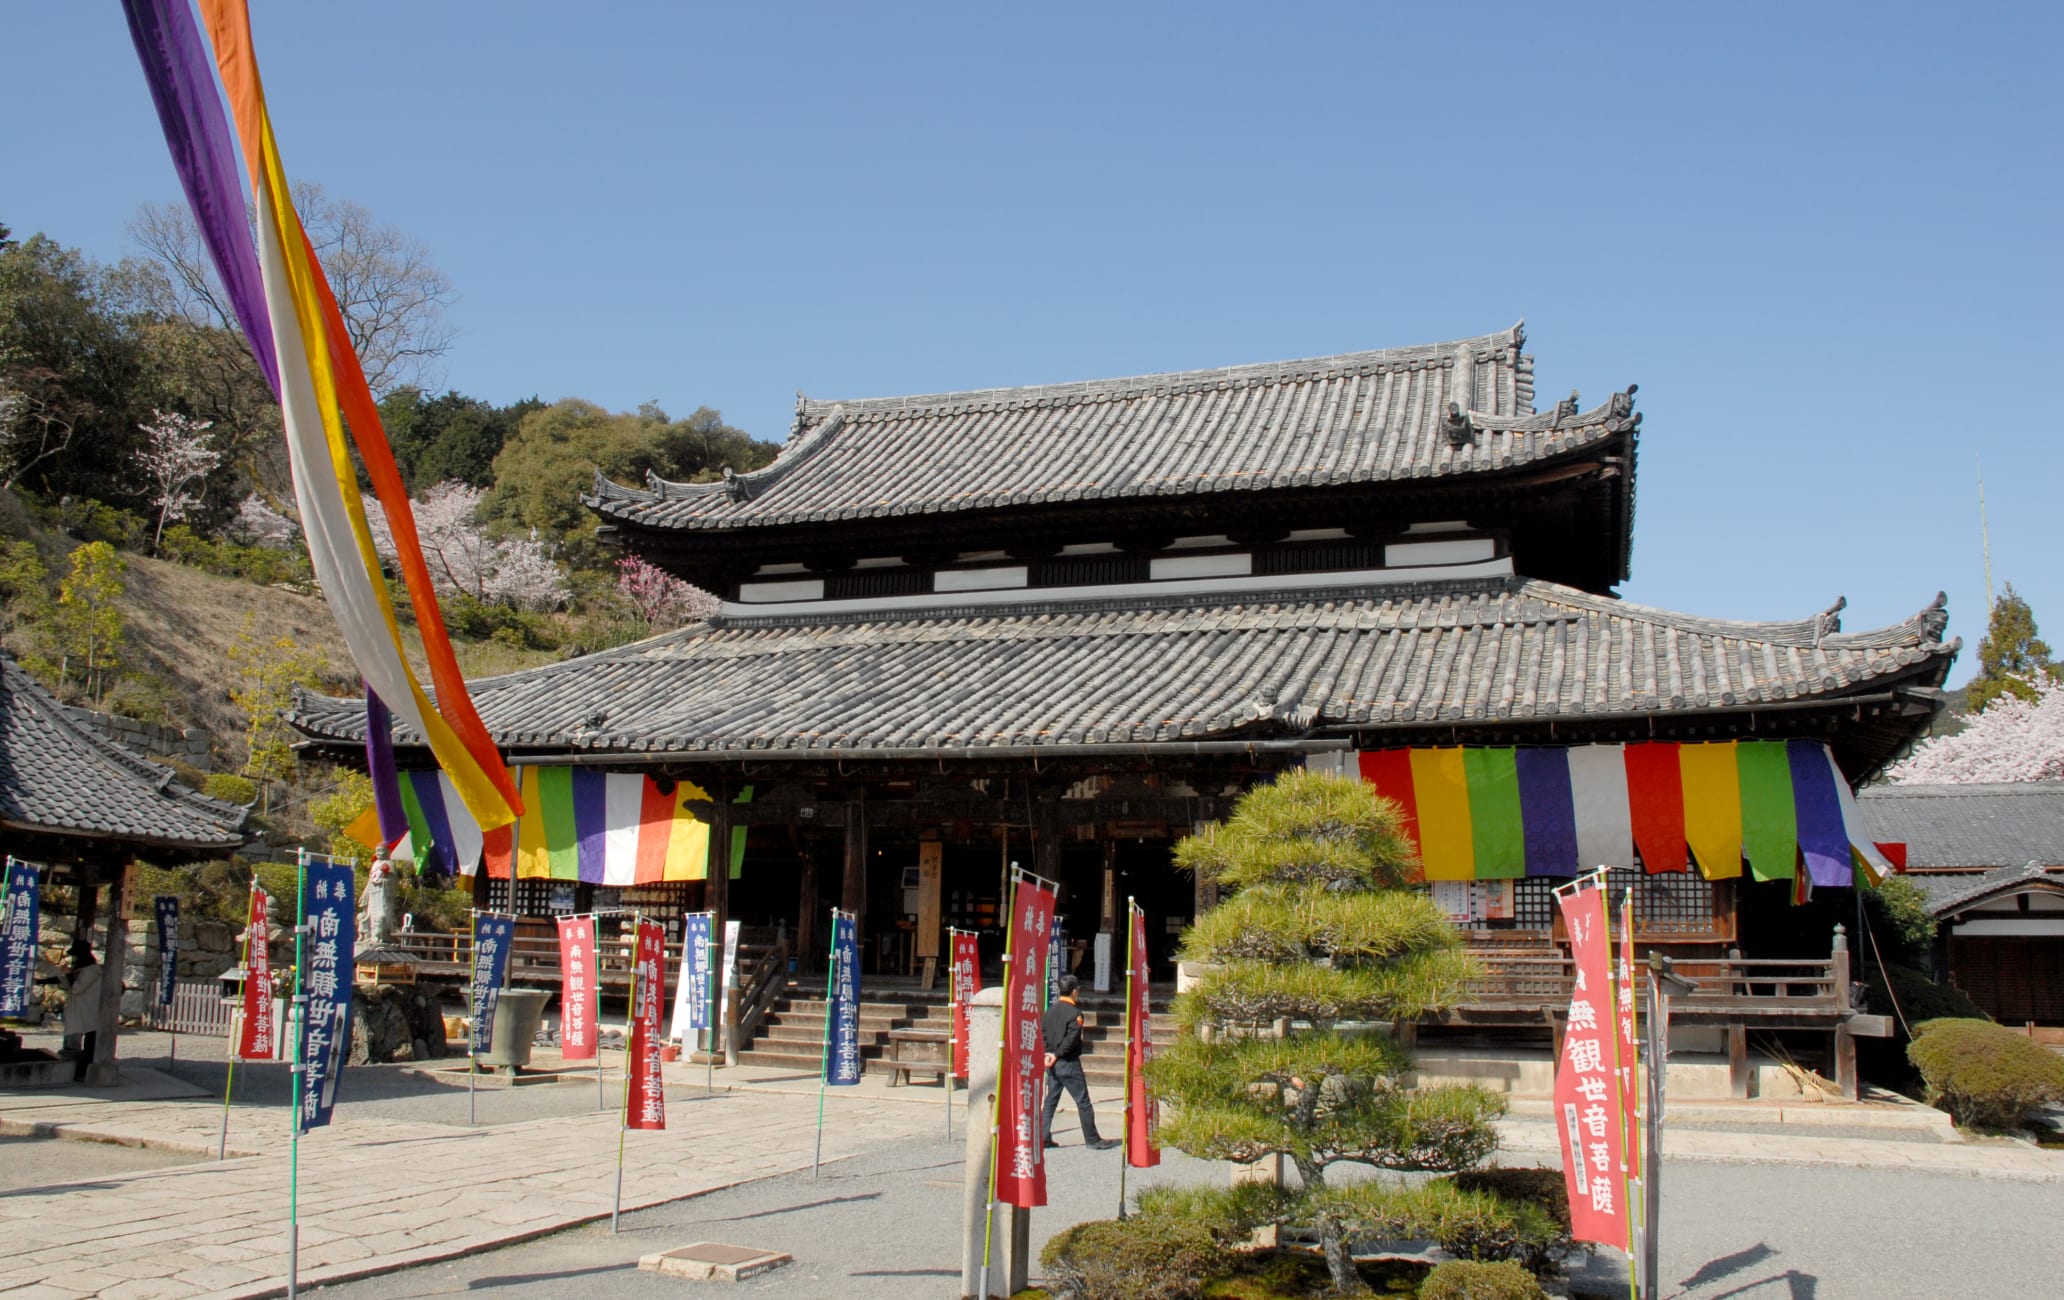 Mii-dera Temple